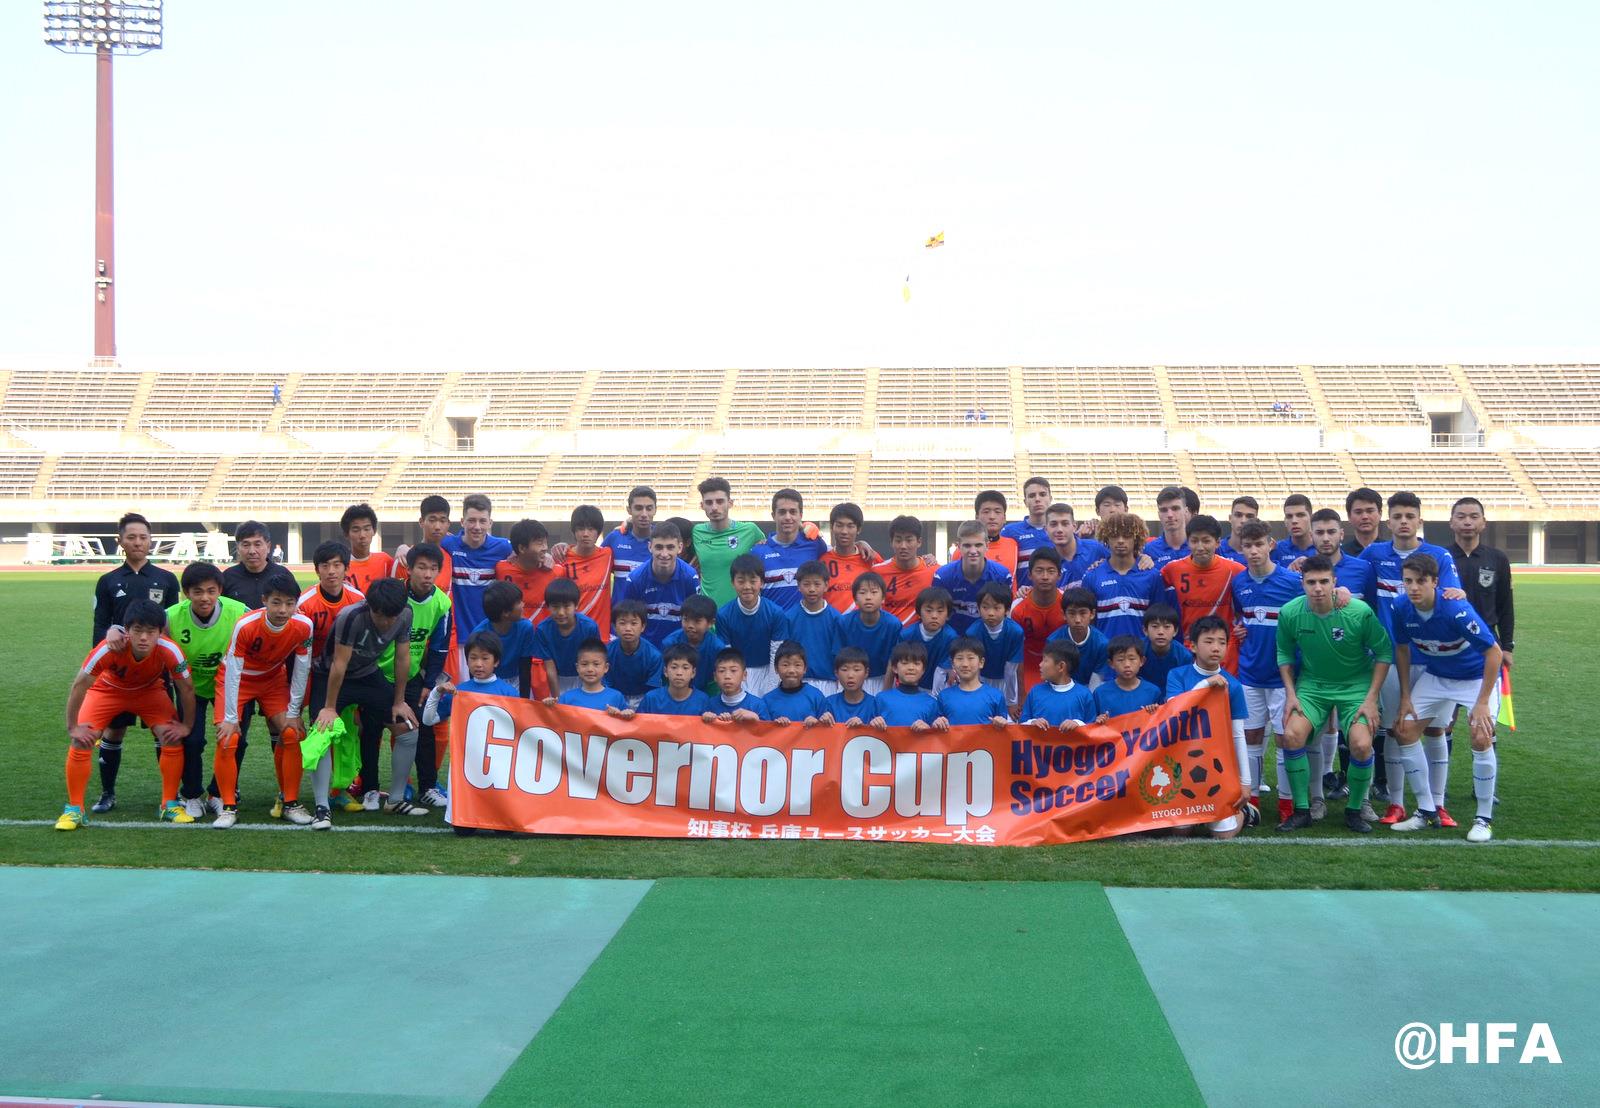 Sampdoria U17 – Governor Cup – Hyogo (JA) 2017